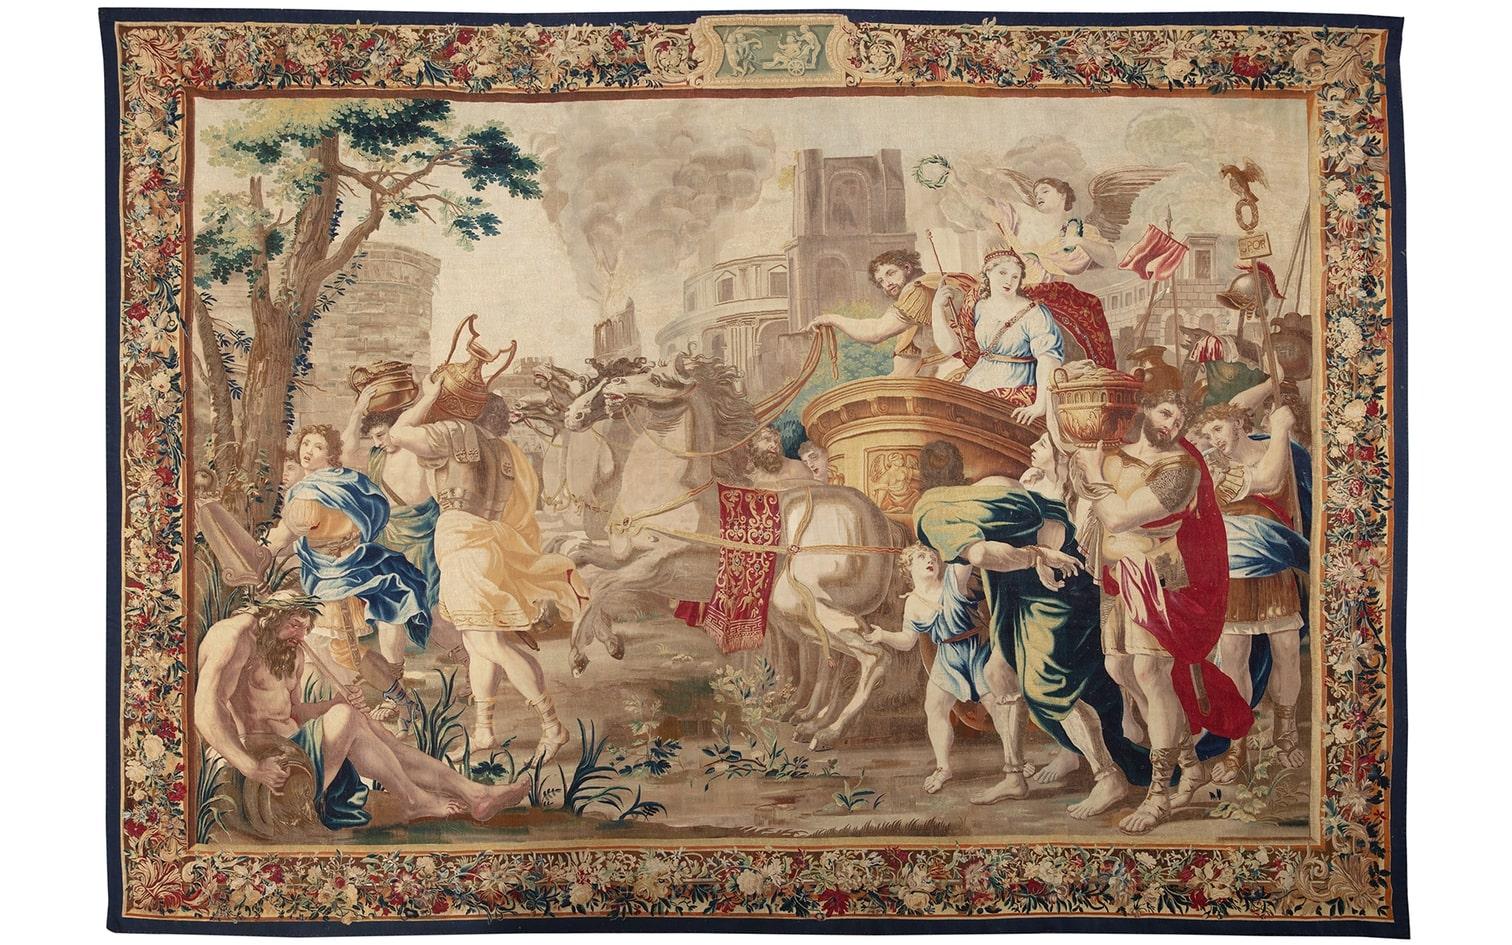 Une tapisserie de Bruxelles représentant Marc Antoni et Cléopâtre,
D'après des dessins de Charles Poerson (1609-1667), seconde moitié du XVIIe siècle
- seconde moitié du XVIIe siècle

Propriété d'un établissement d'enseignement du Midwest

MATERIAL